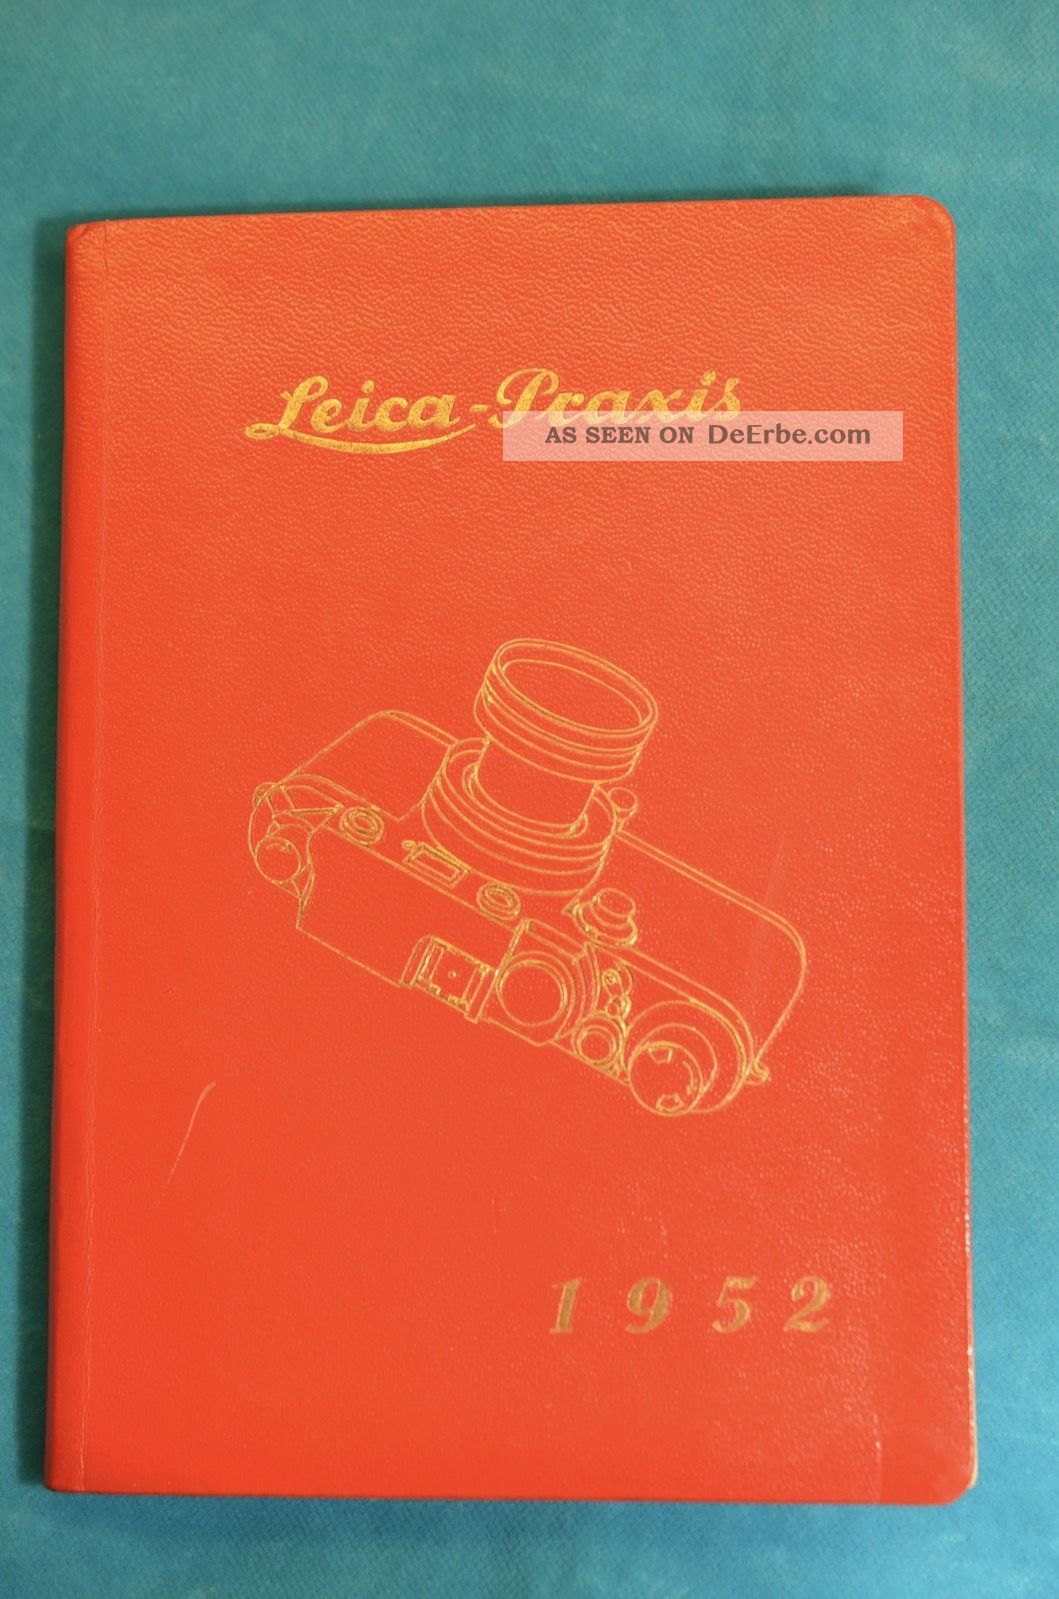 Leica Praxis 1952 Kalenderbuch Foto - Kino Wegert Berlin Leica Bedienung Photographica Bild